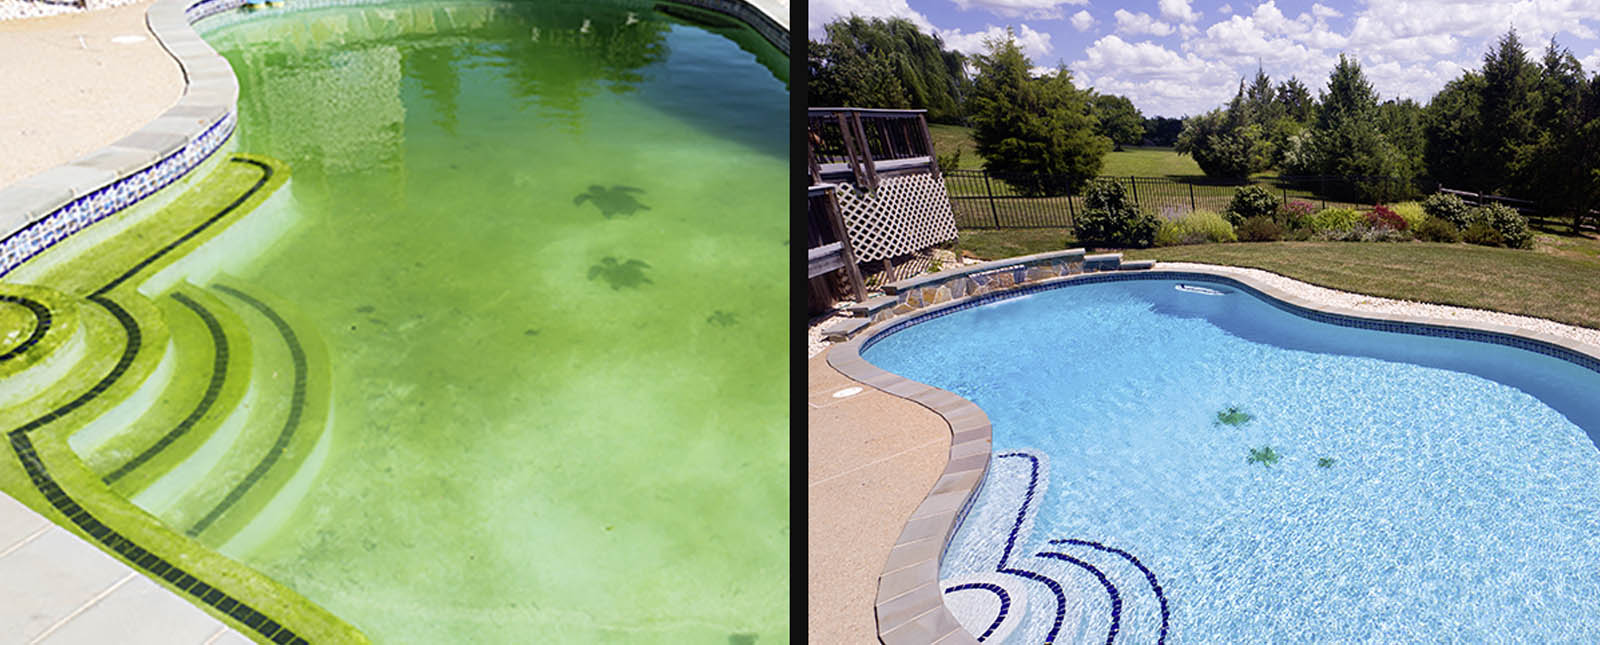 Ouvrir sa piscine au printemps : comment traiter une eau verte ?